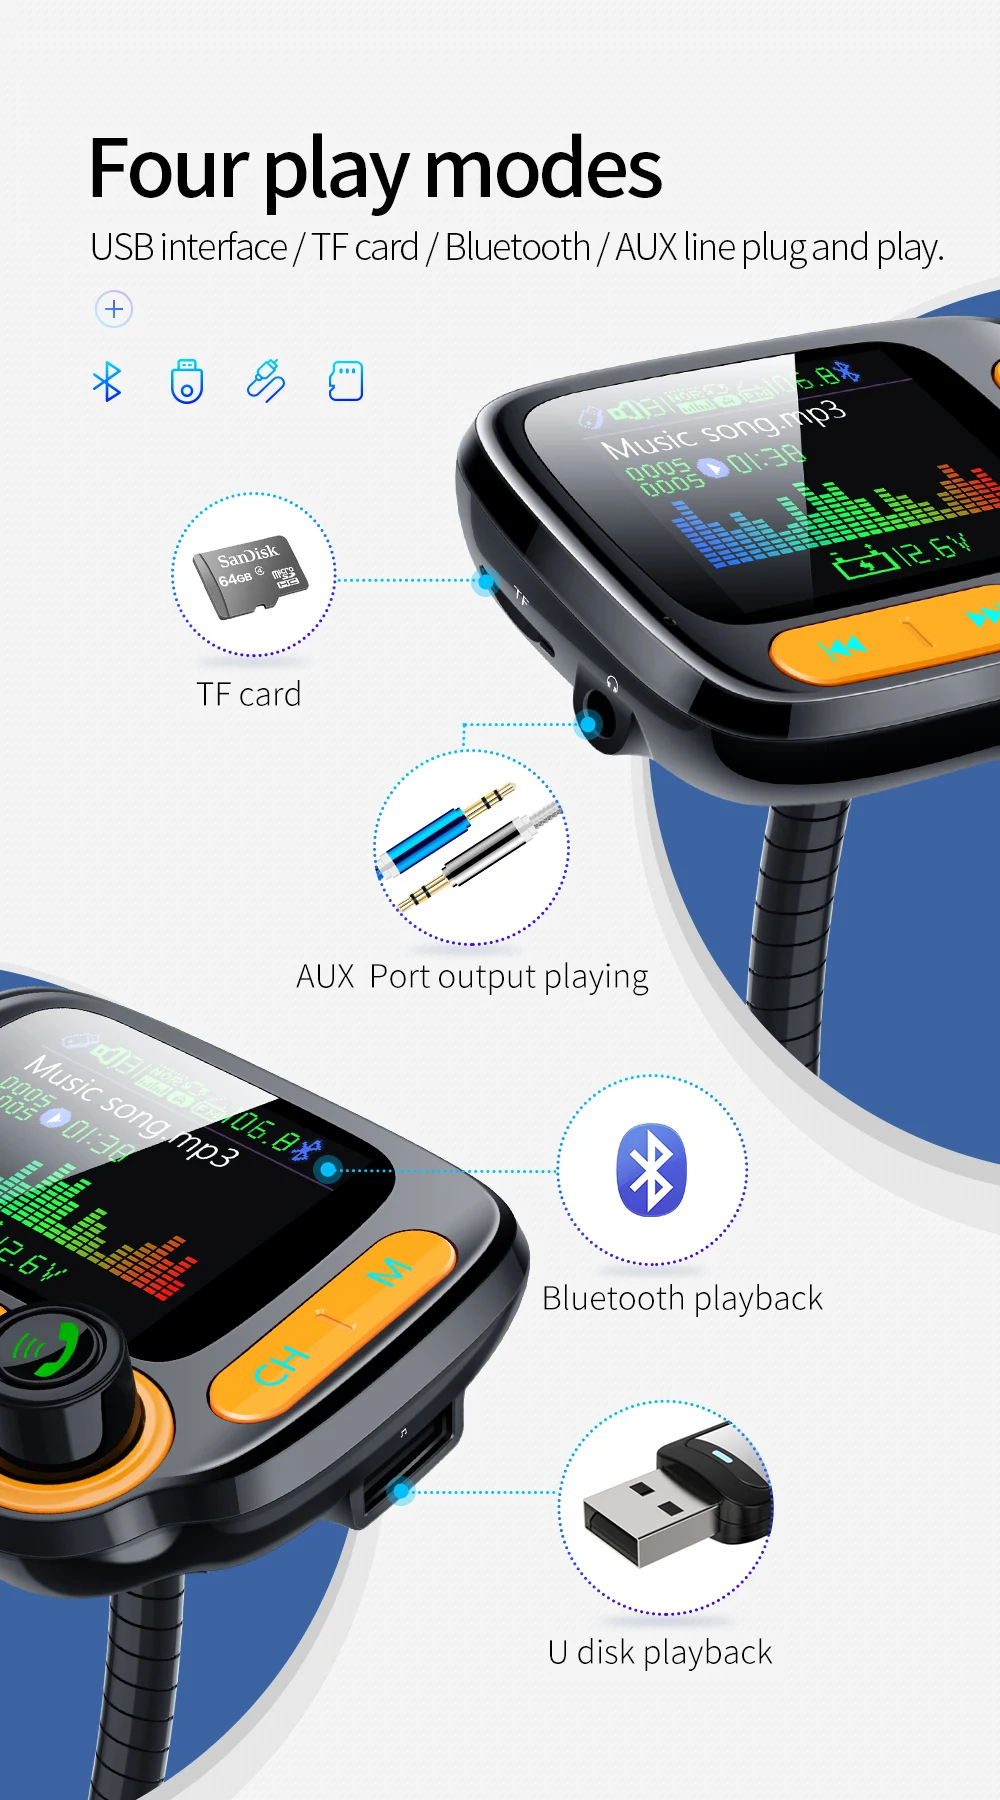 Korseed Bluetooth комплект de coche 1,8 дюймов Цвет pantalla ЖК-дисплей QC3.0, цвета в ассортименте de coche Манос libres передатчик FM Bluetooth 5,0